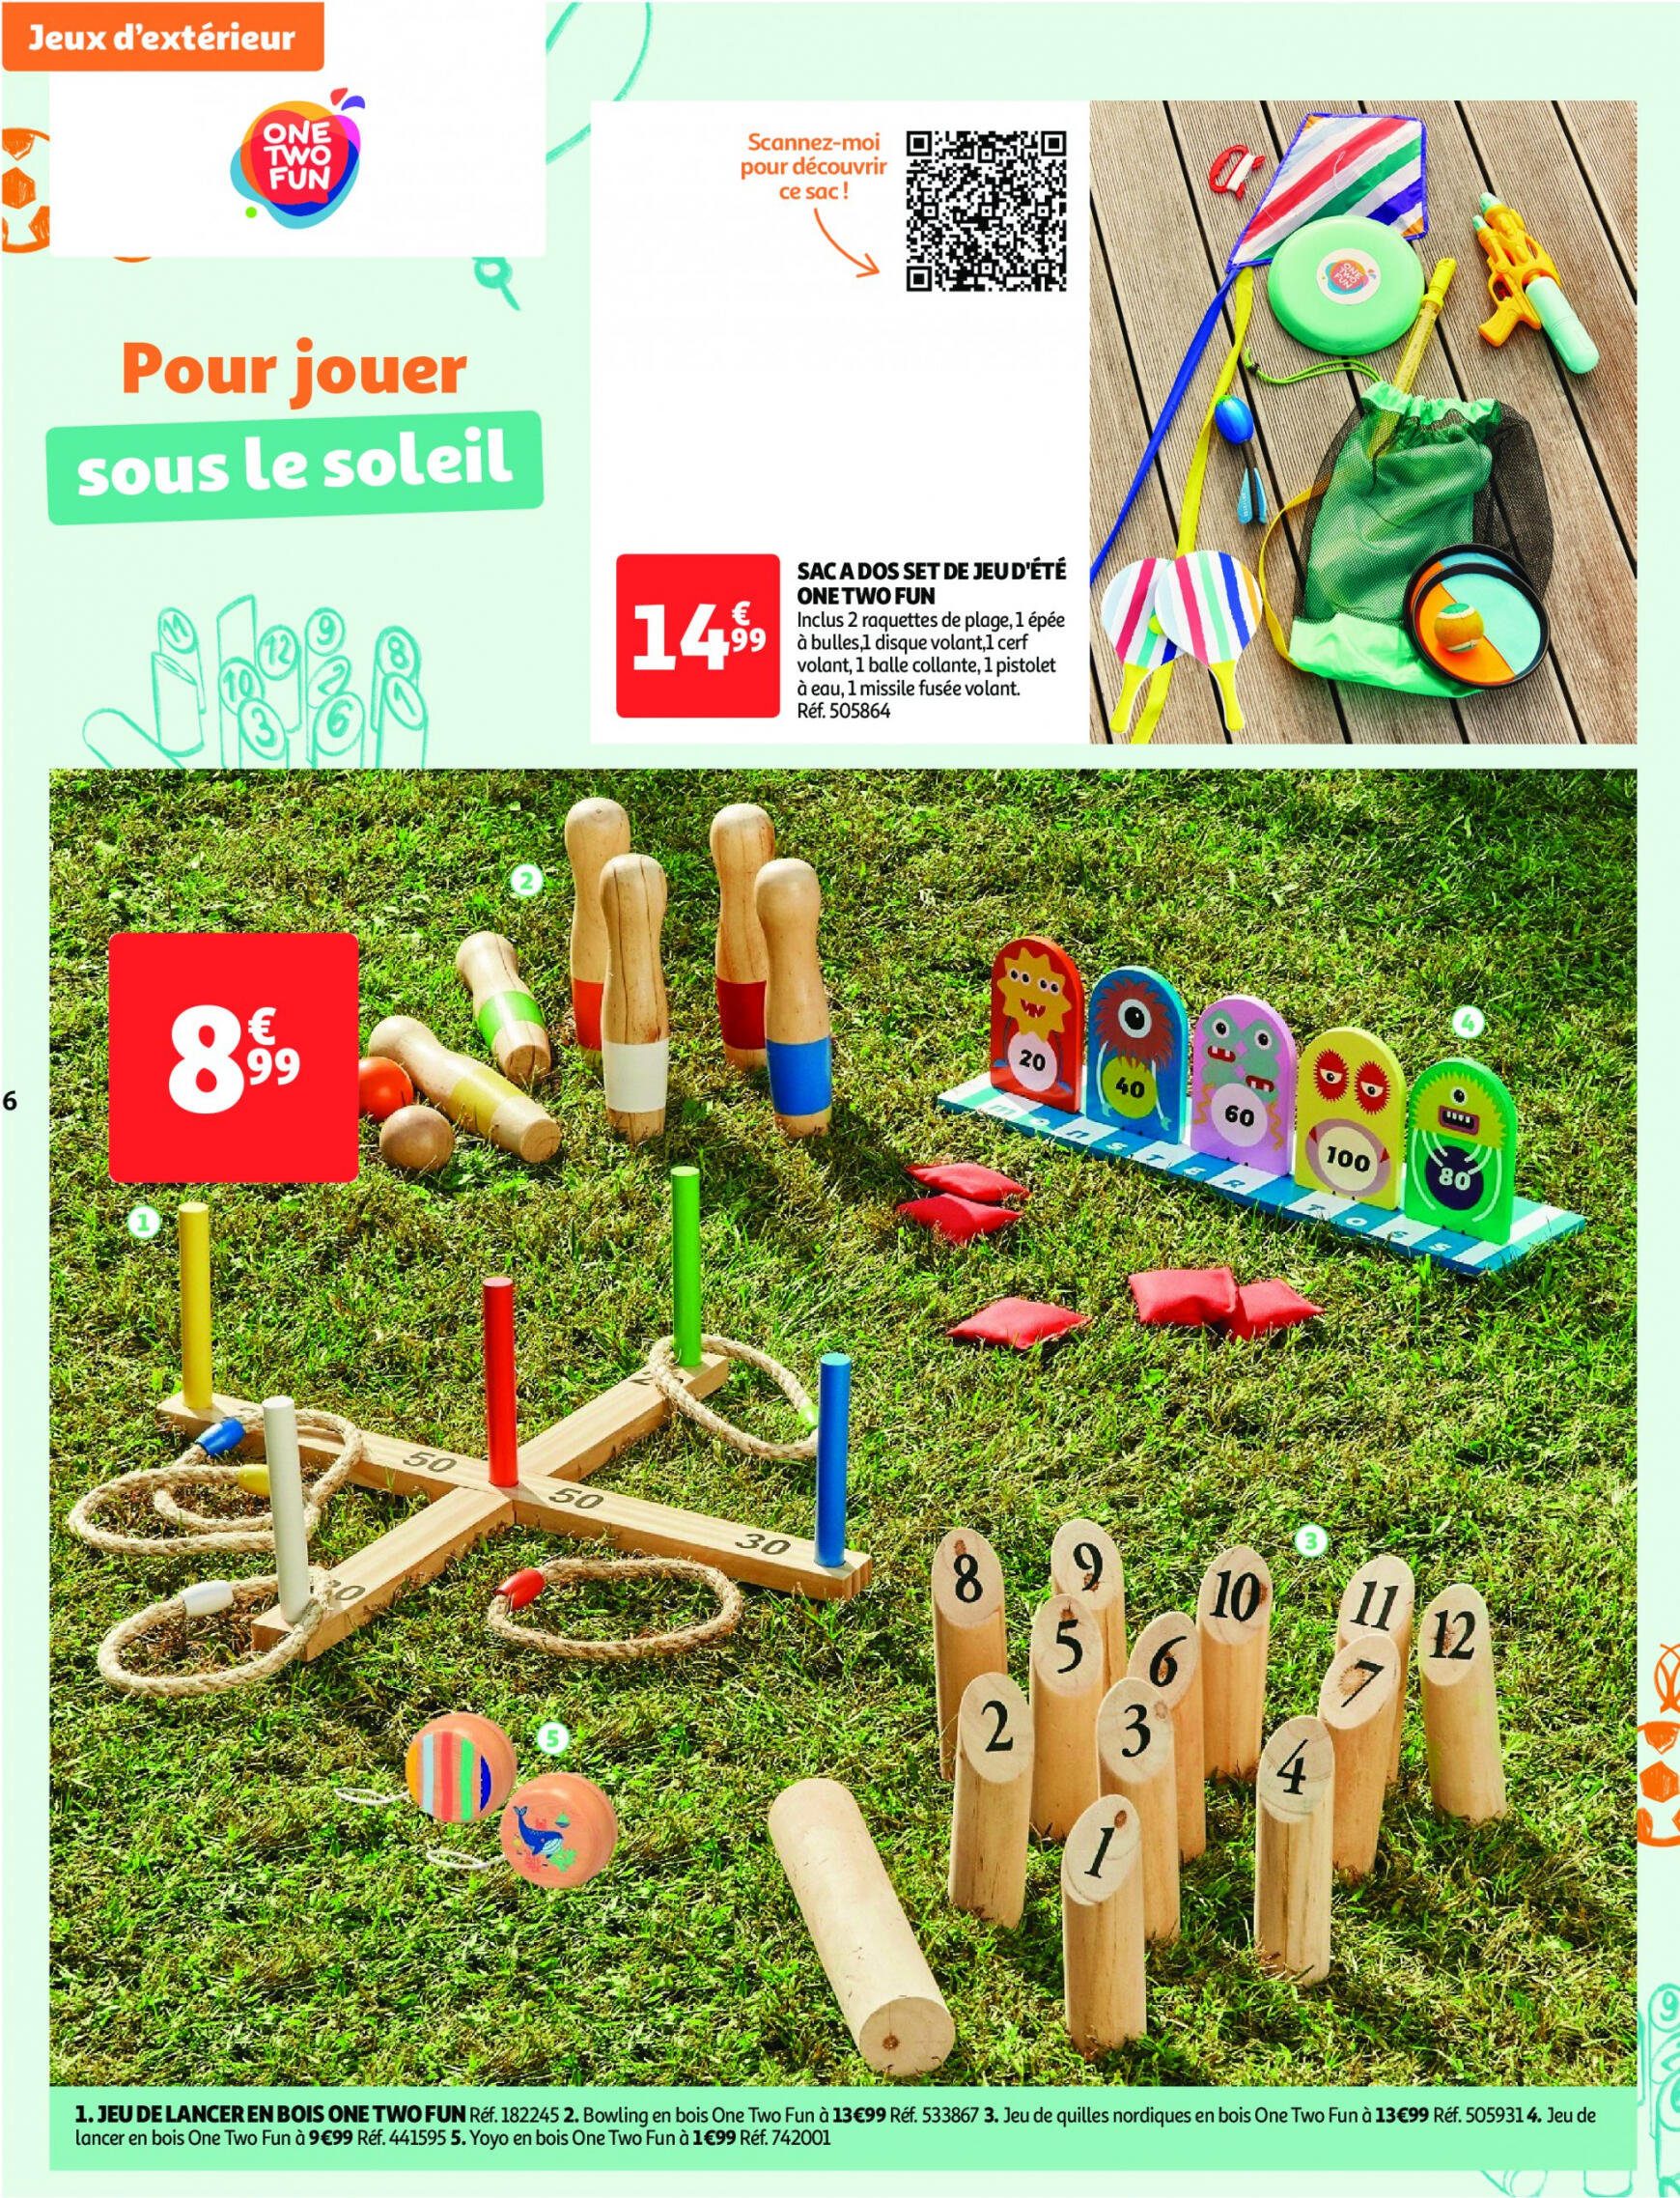 auchan - Auchan - Nos exclusivités Summer pour s'amuser tout l'été folder huidig 14.05. - 15.06. - page: 6